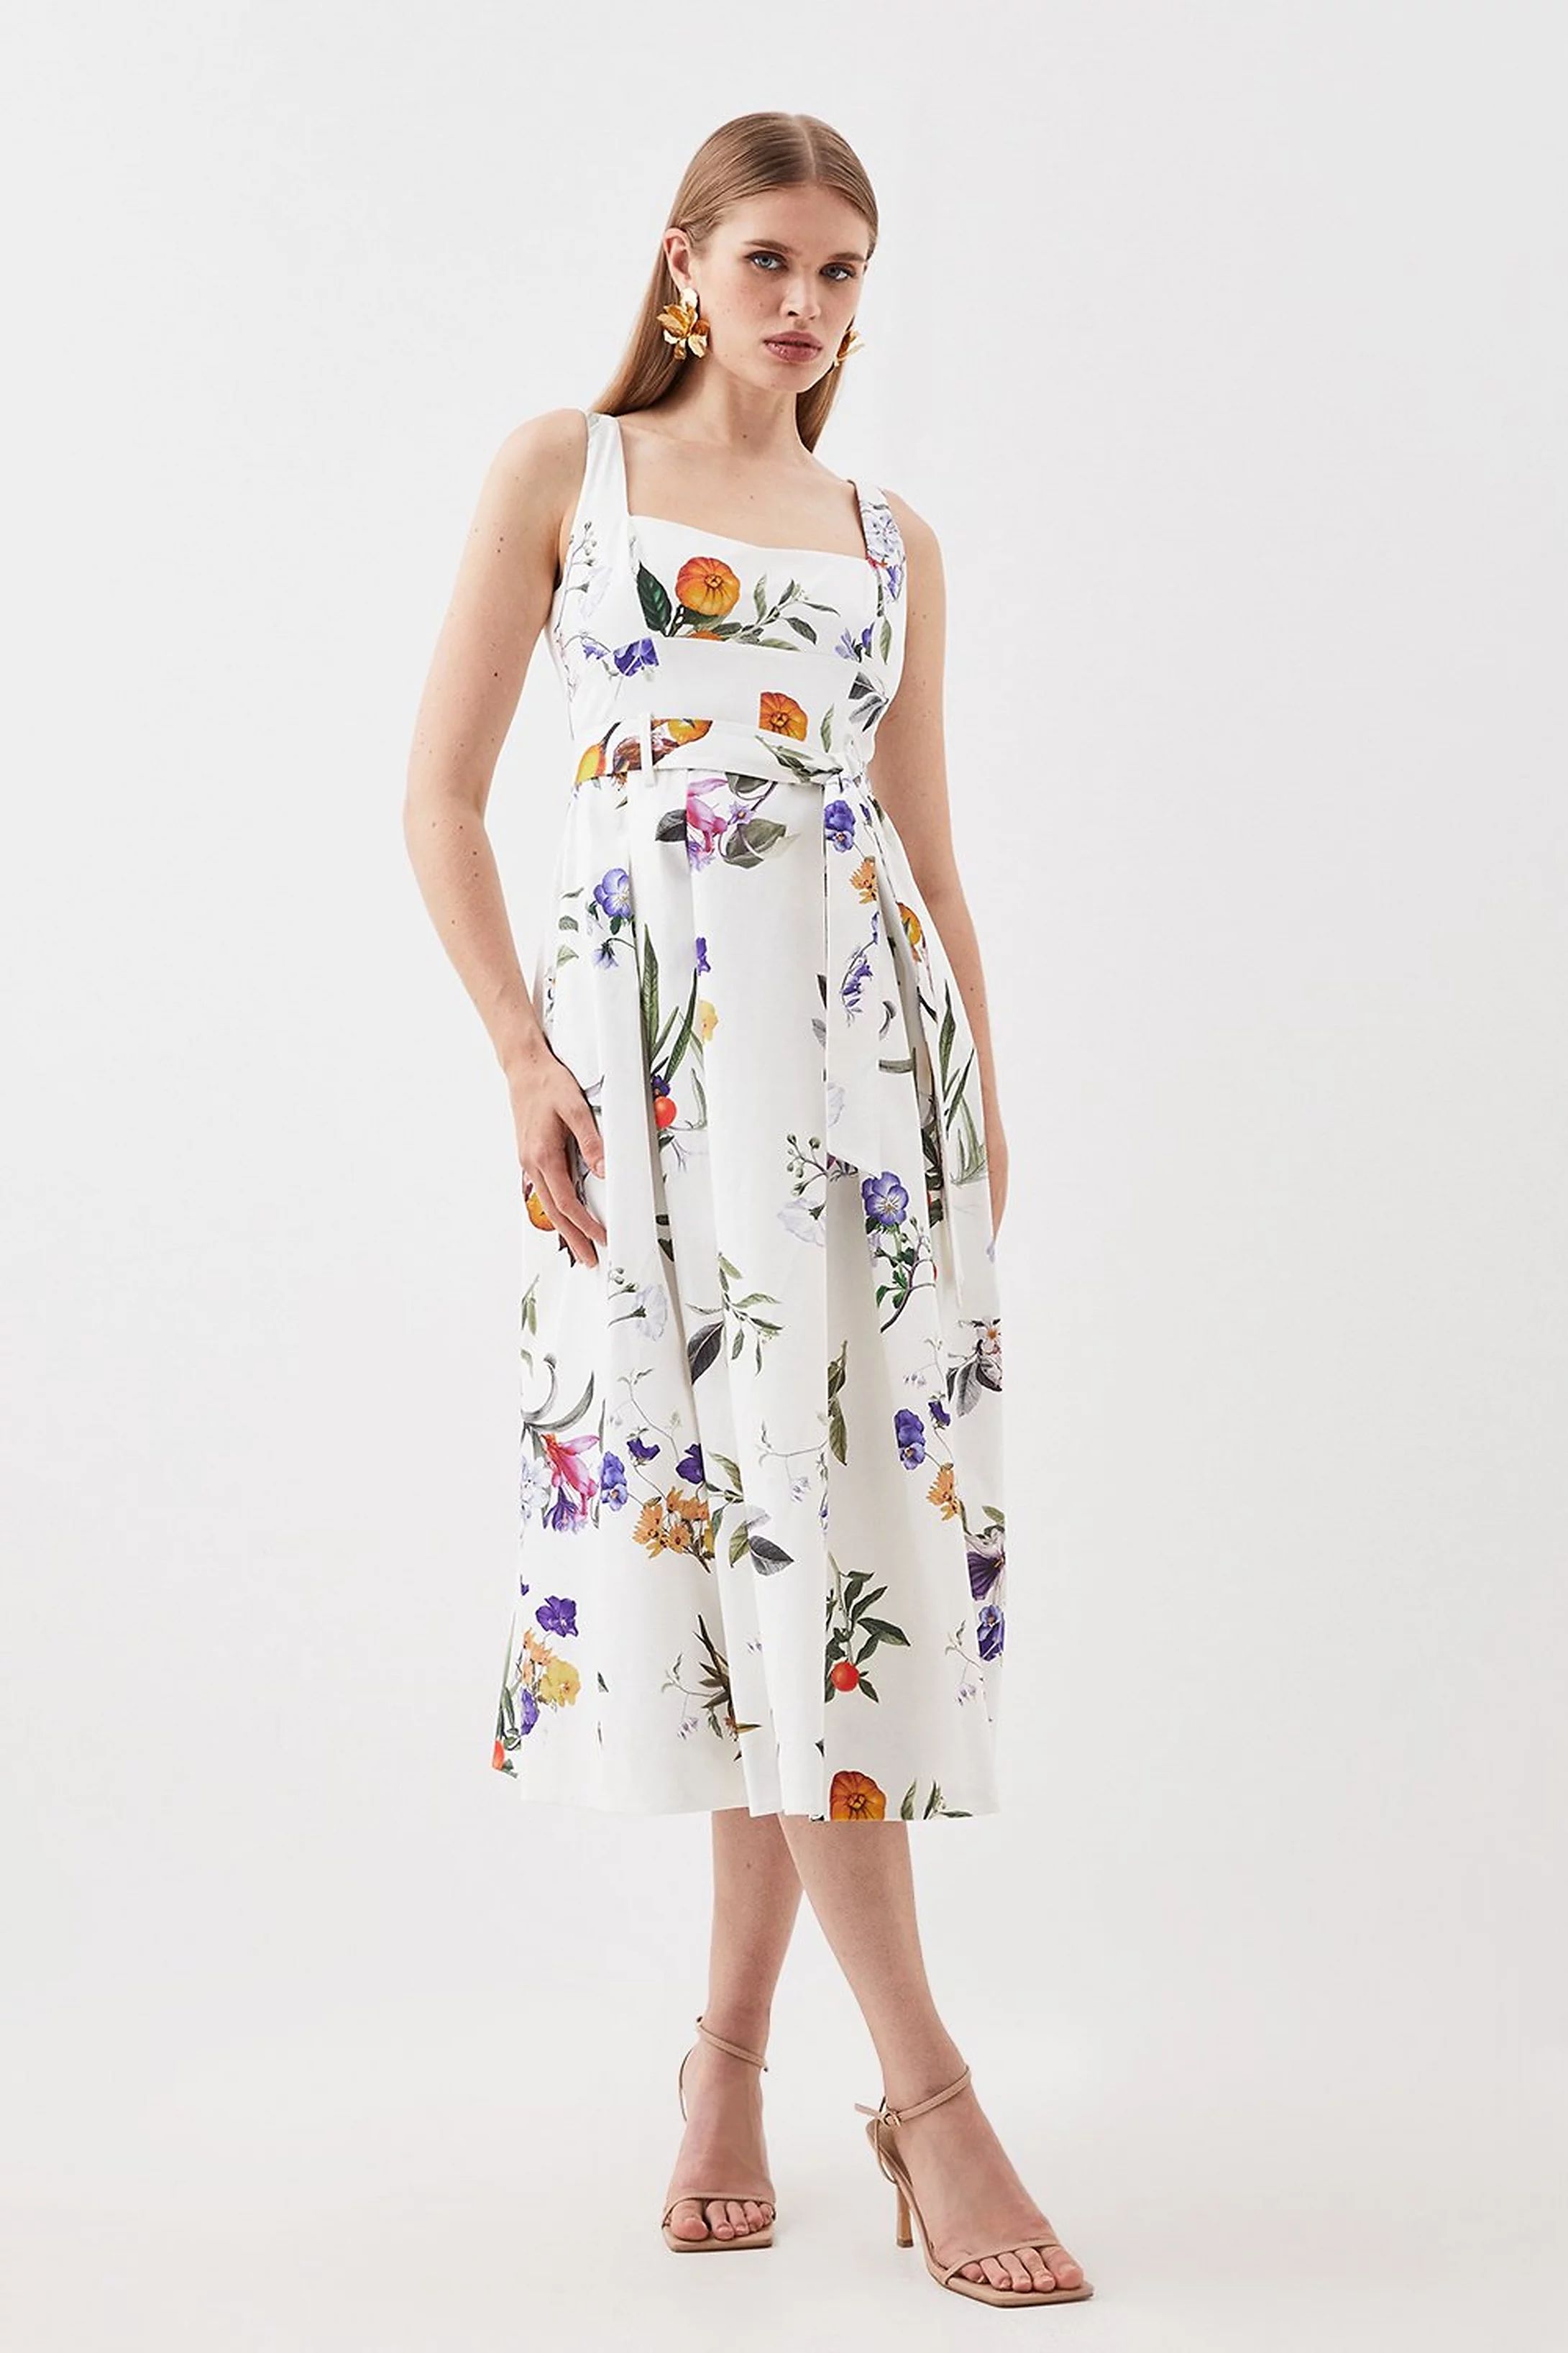 Tailored Fruity Floral Belted Sleeveless Midi Dress | Karen Millen UK + IE + DE + NL